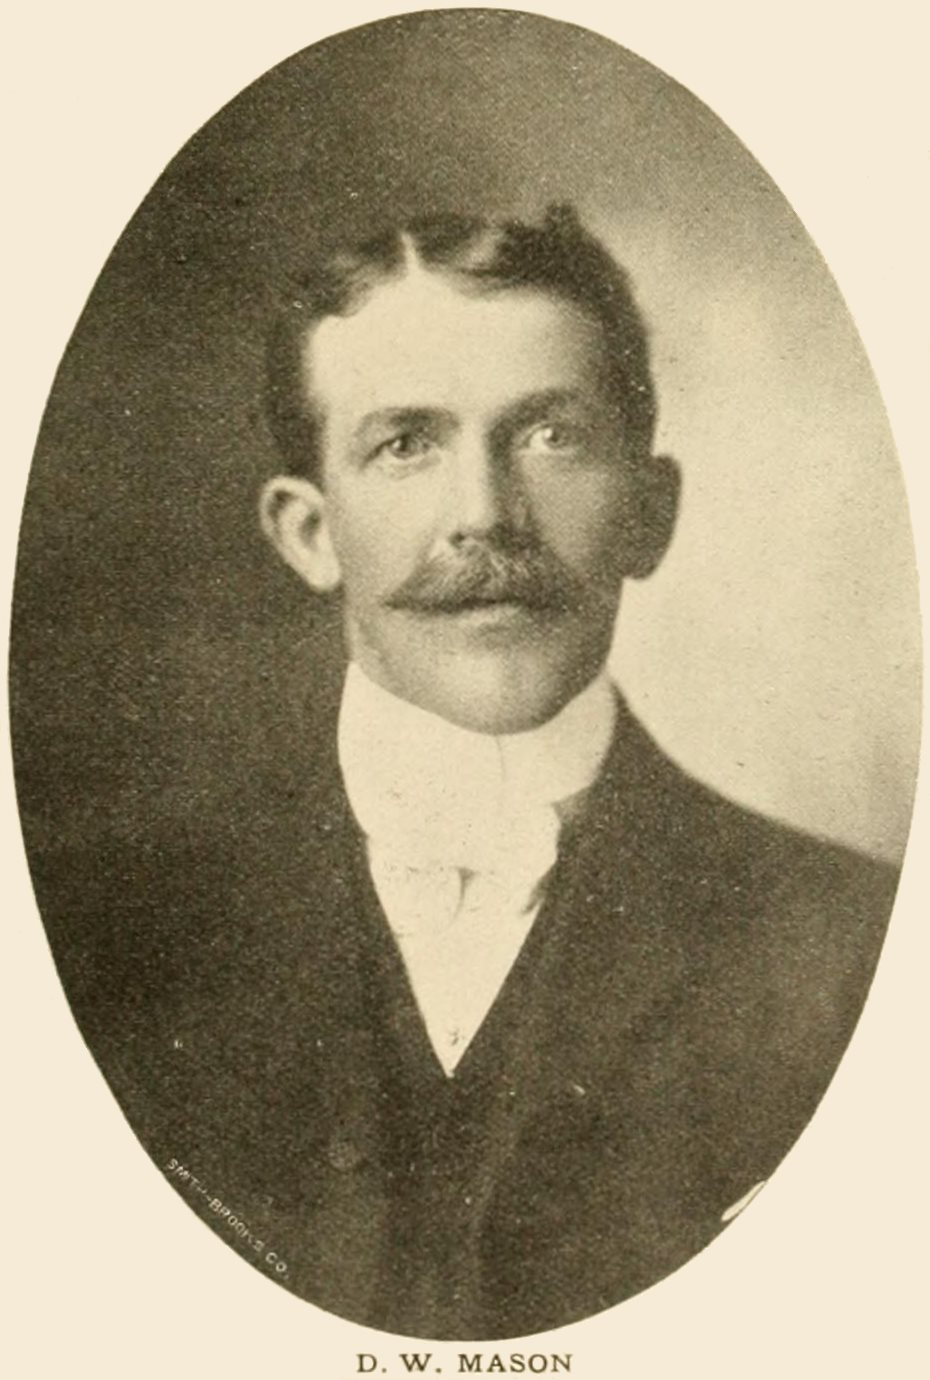 D. W. Mason